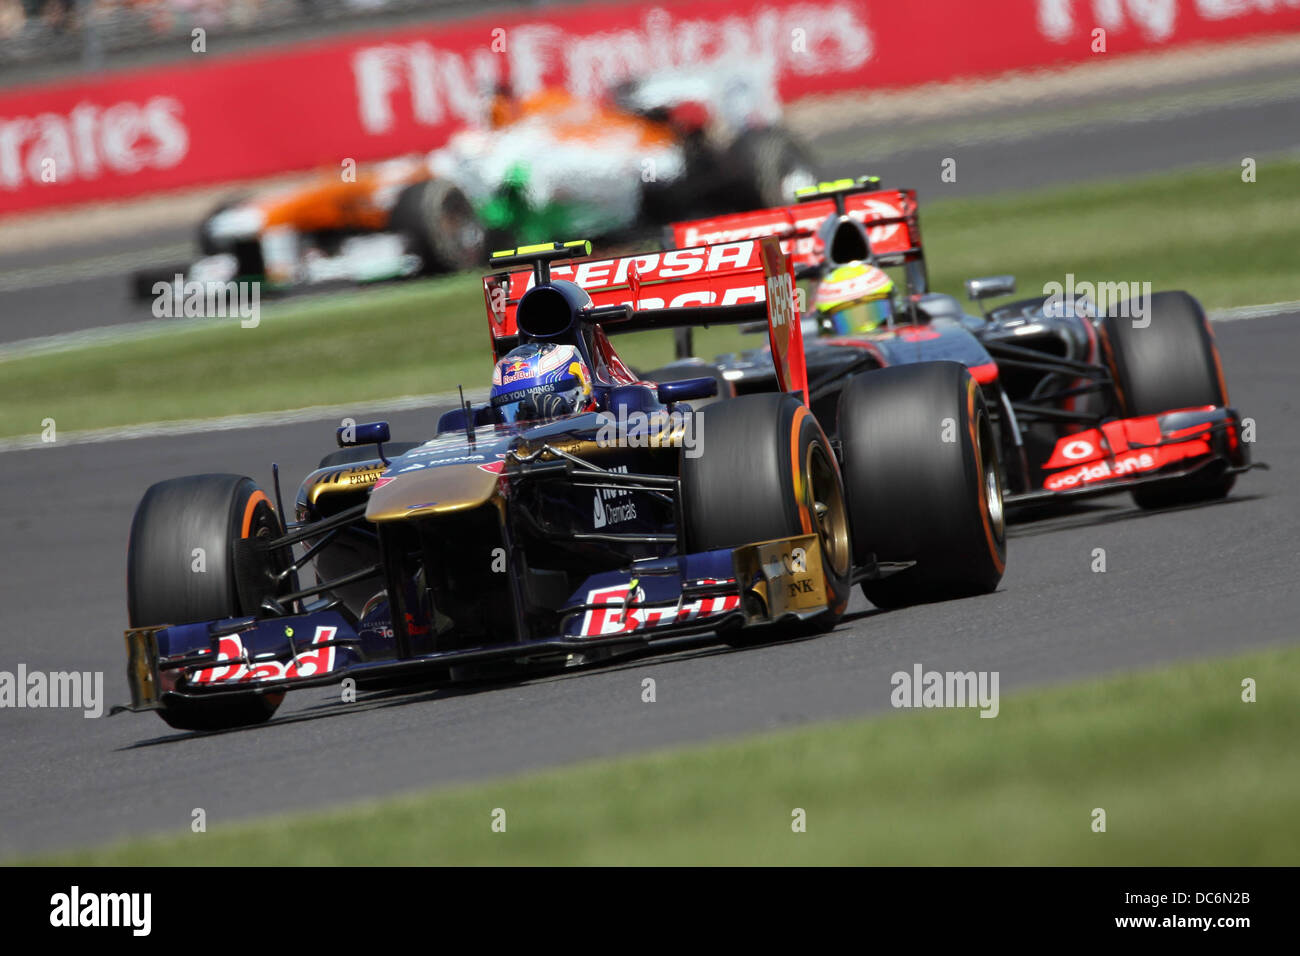 Daniel Ricciardo, Toro Rosso F1 at the 2013 F1 British Grand Prix, Silverstone. Stock Photo